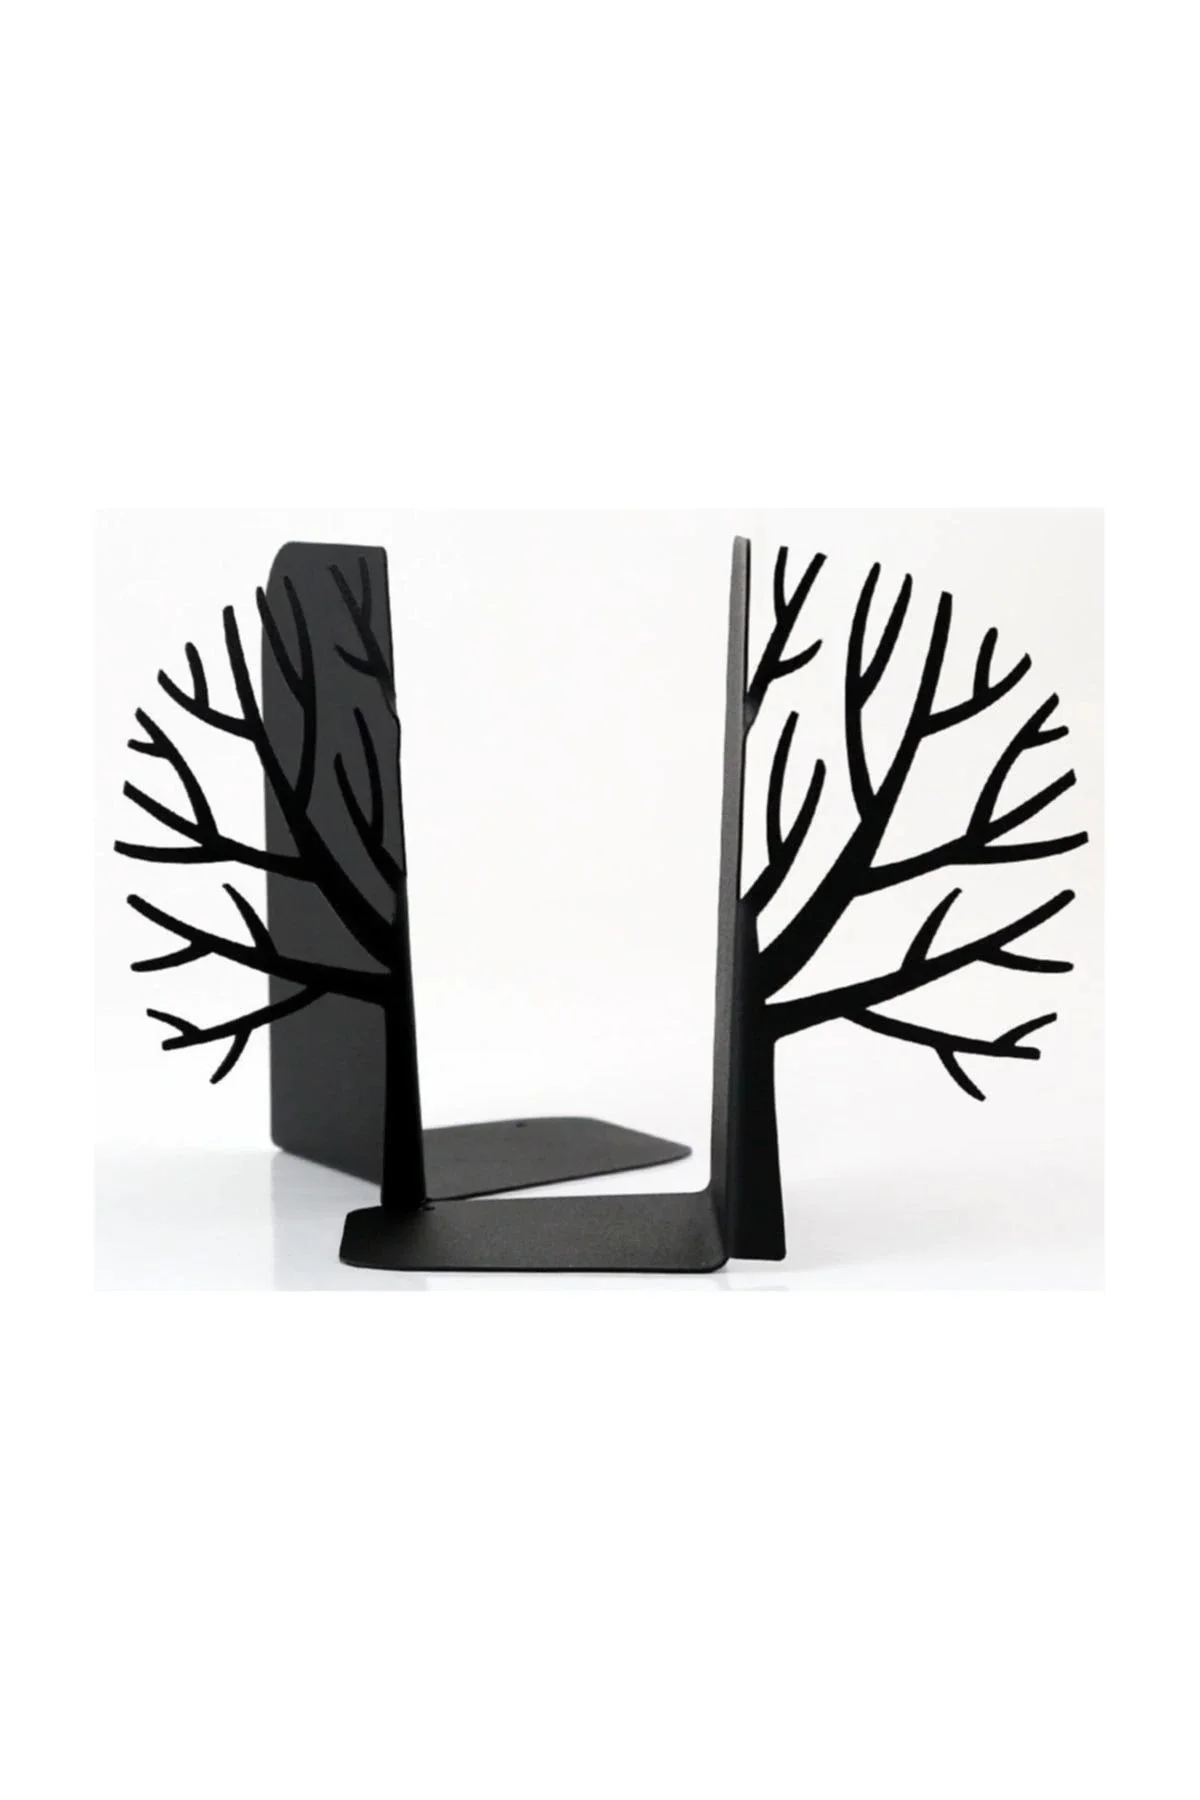 Декоративный металлический держатель для книг с рисунком дерева, подставка для книг